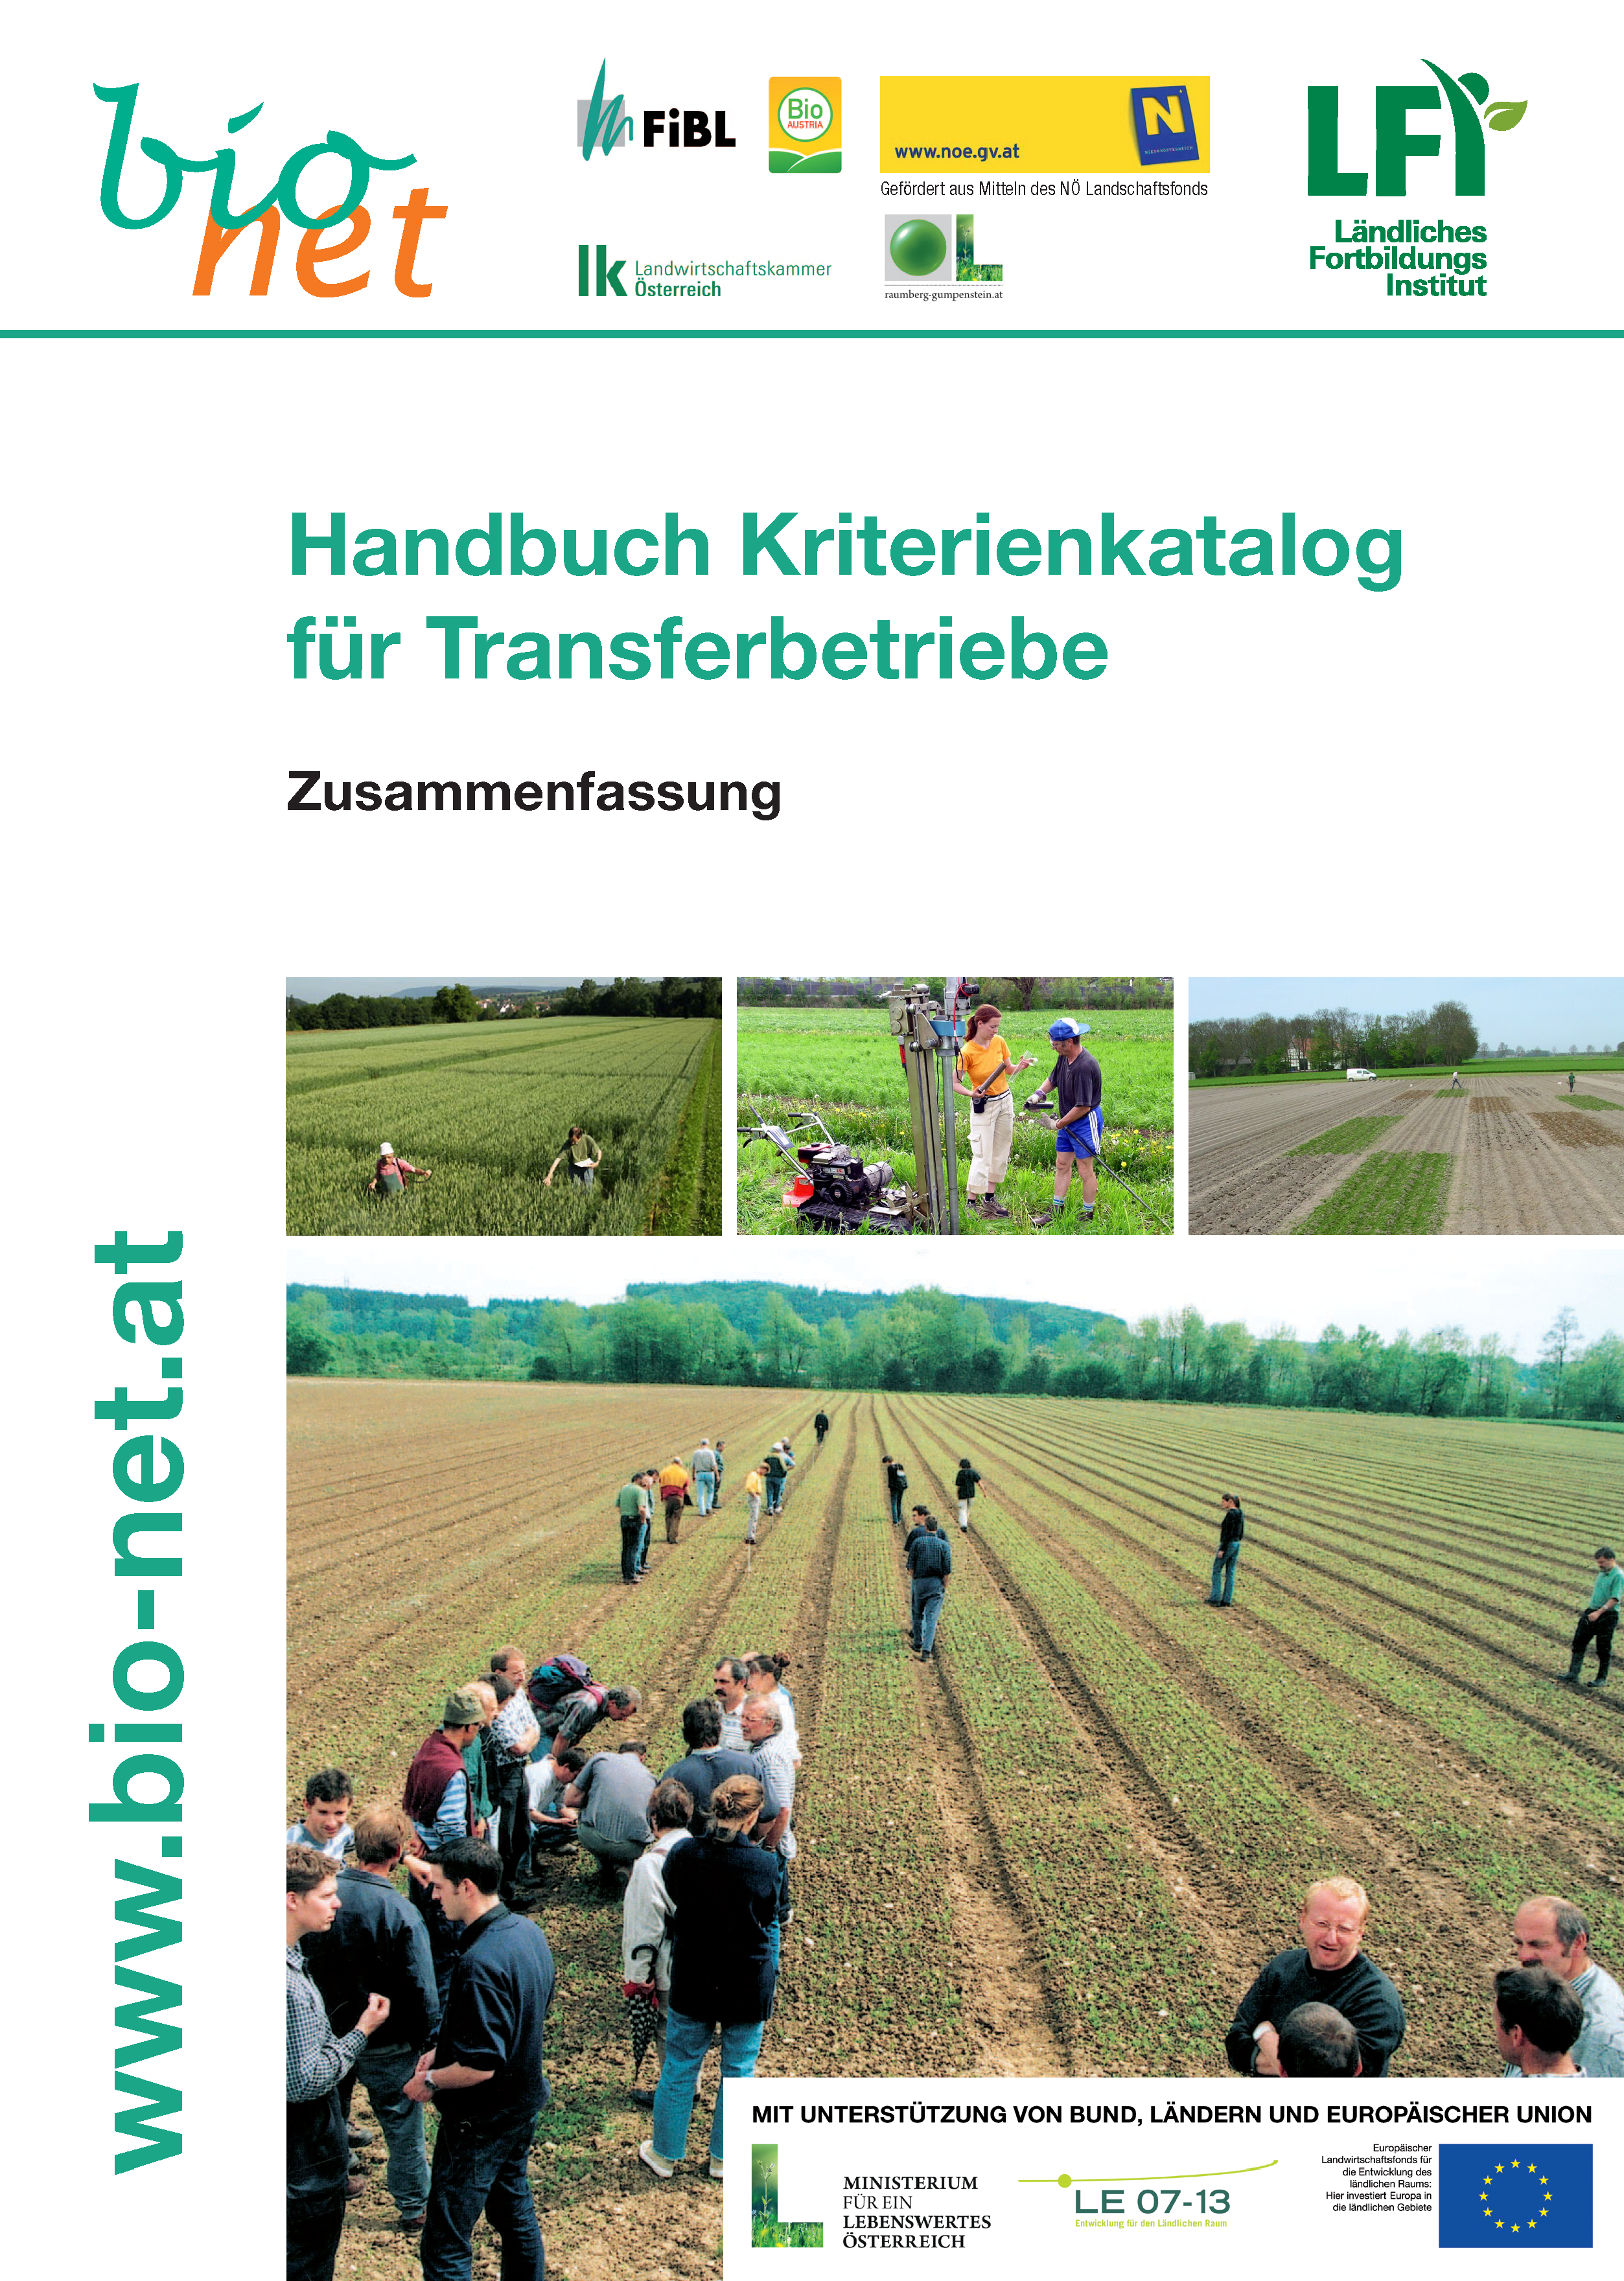 Handbuch Kriterienkatalog für Transferbetriebe